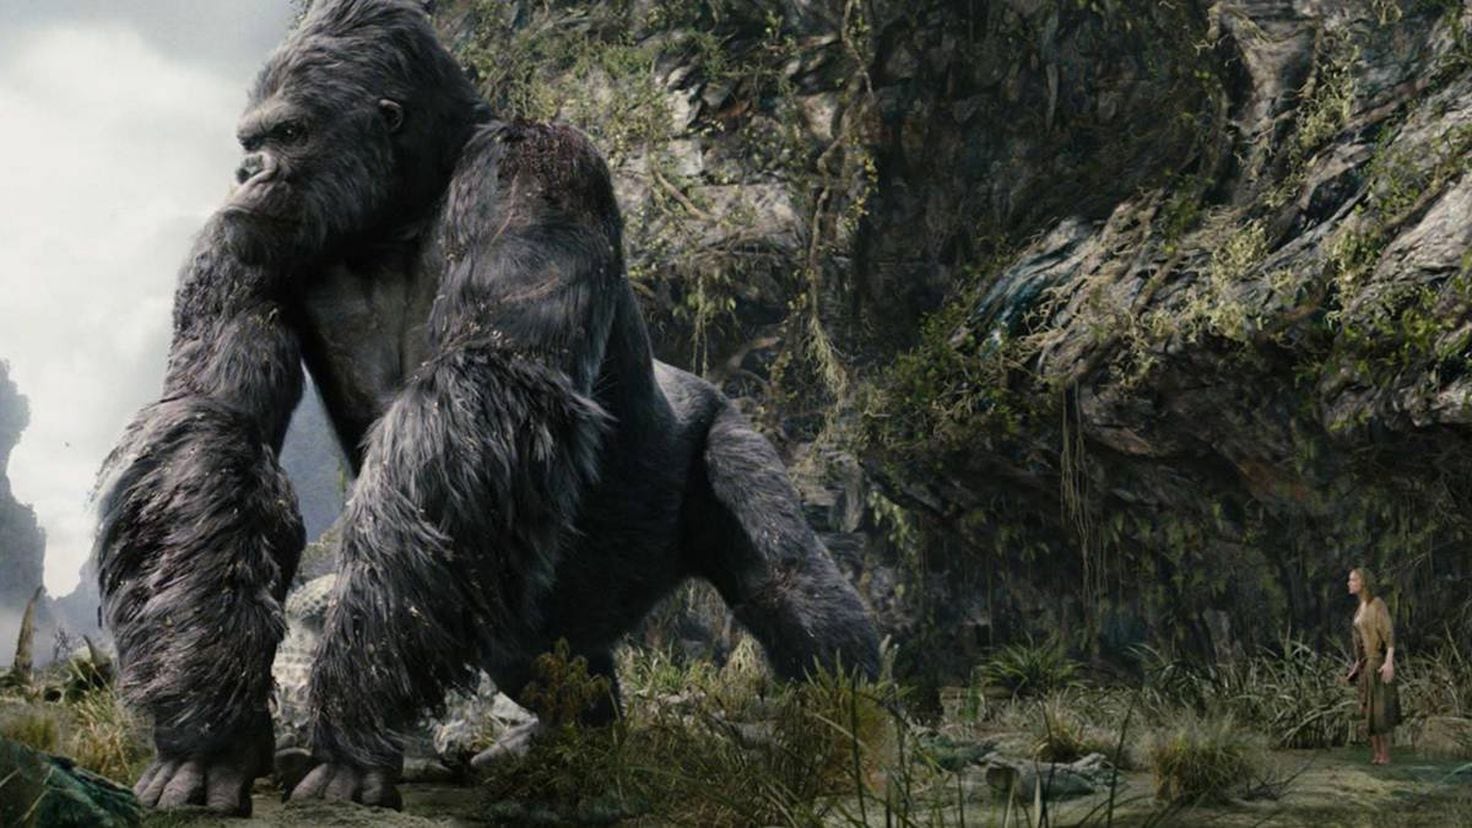 King Kong: Así nació el mito del gorila más famoso del cine